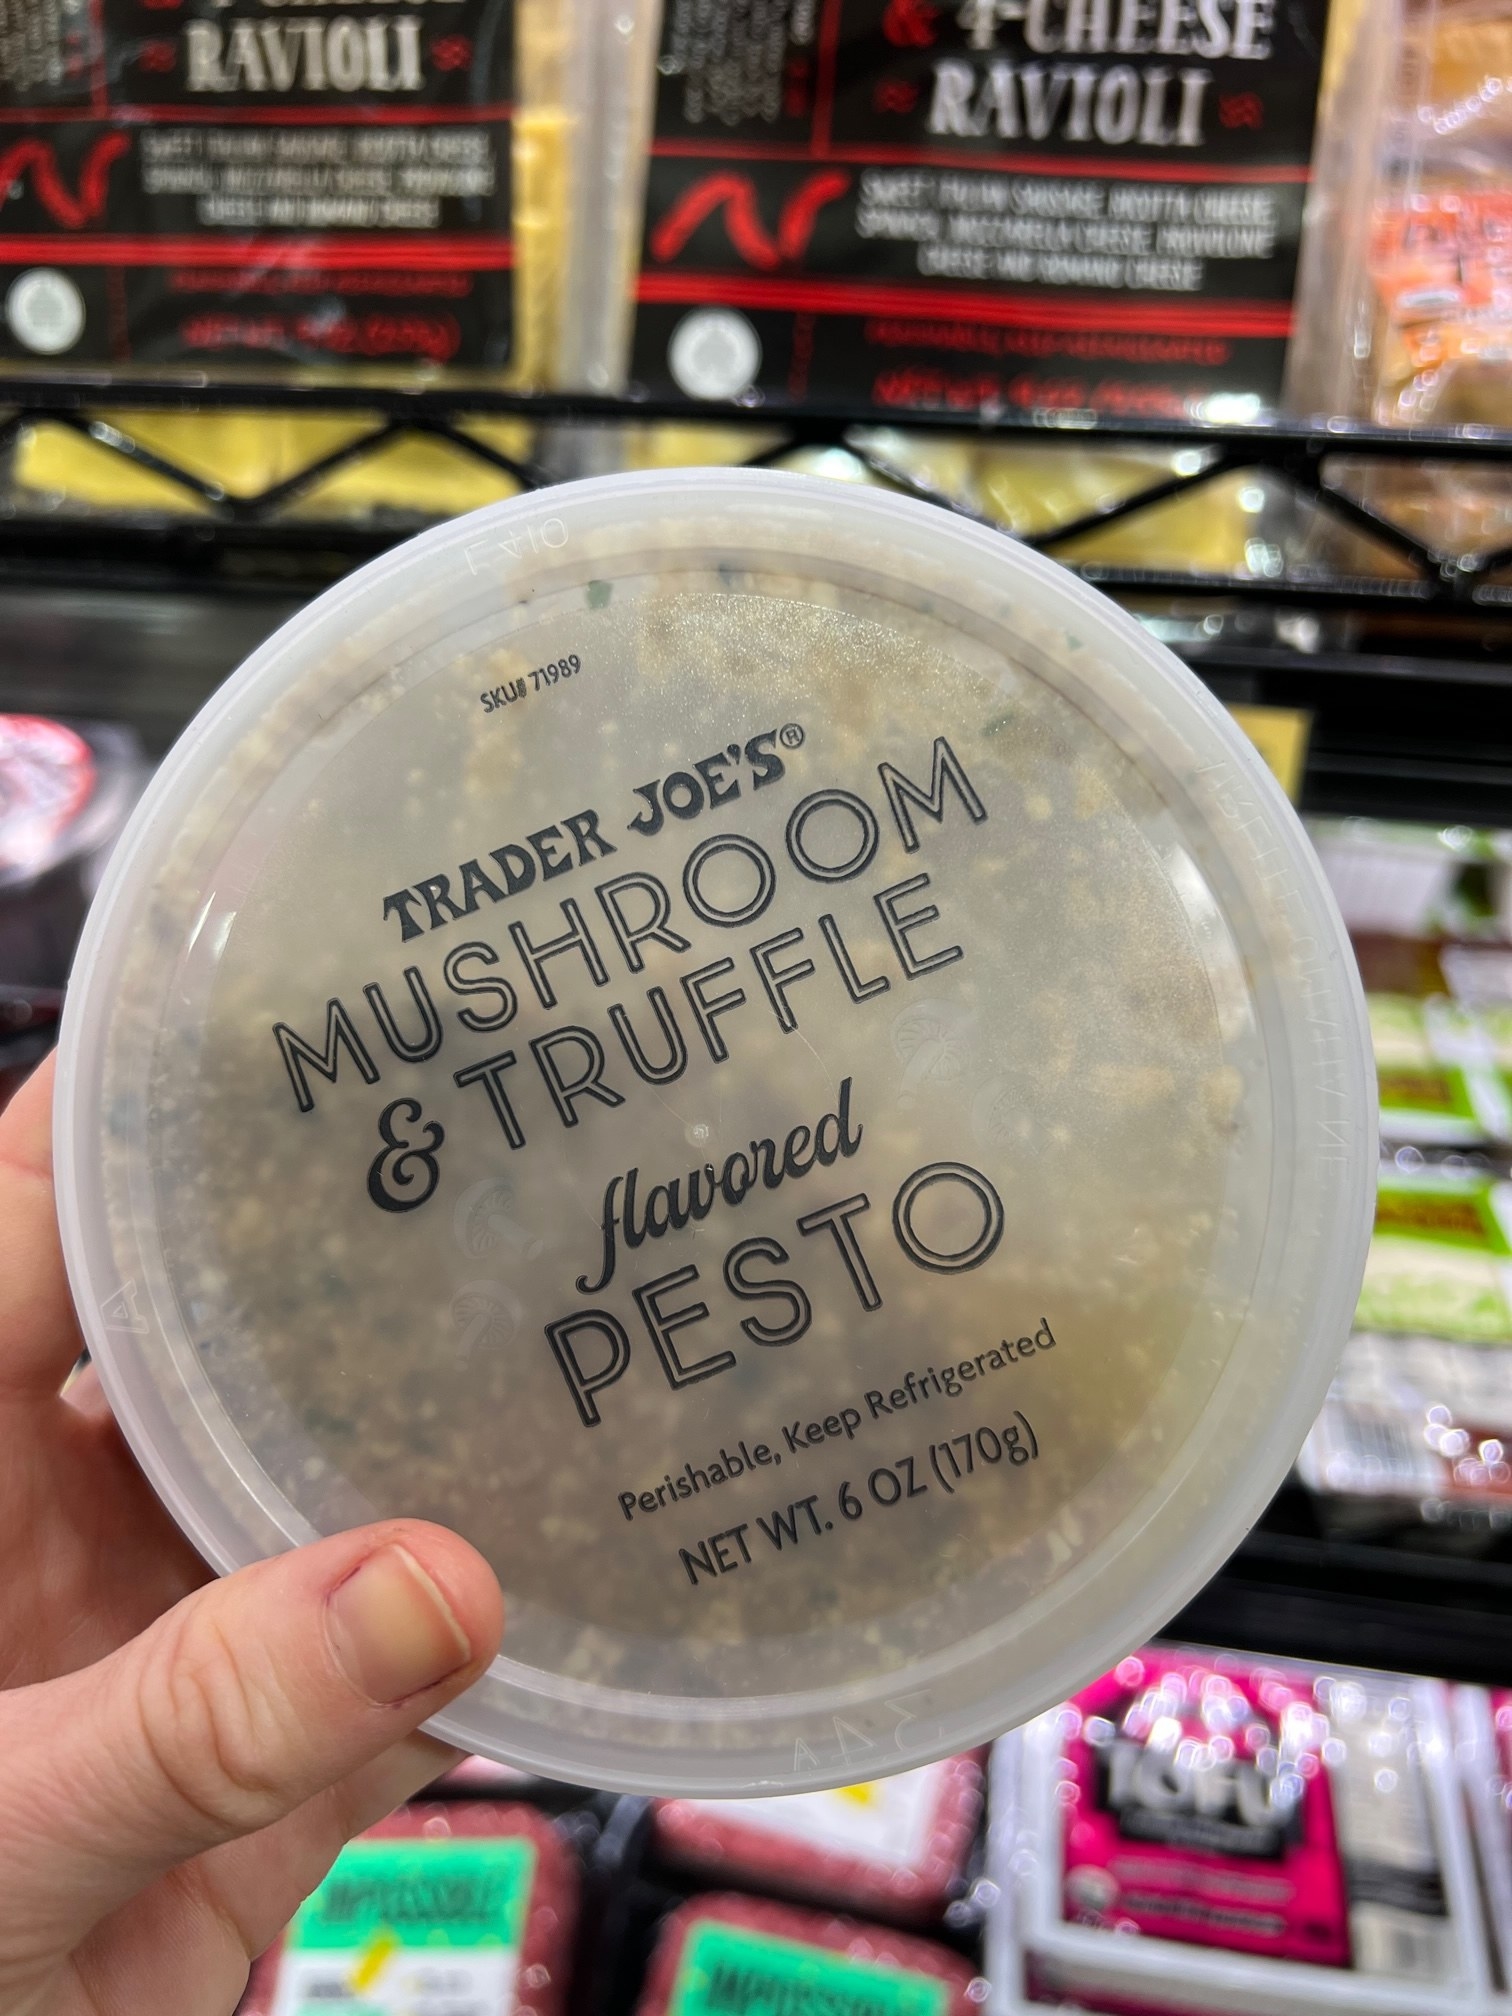 Mushroom &amp;amp; Truffle Flavored Pesto